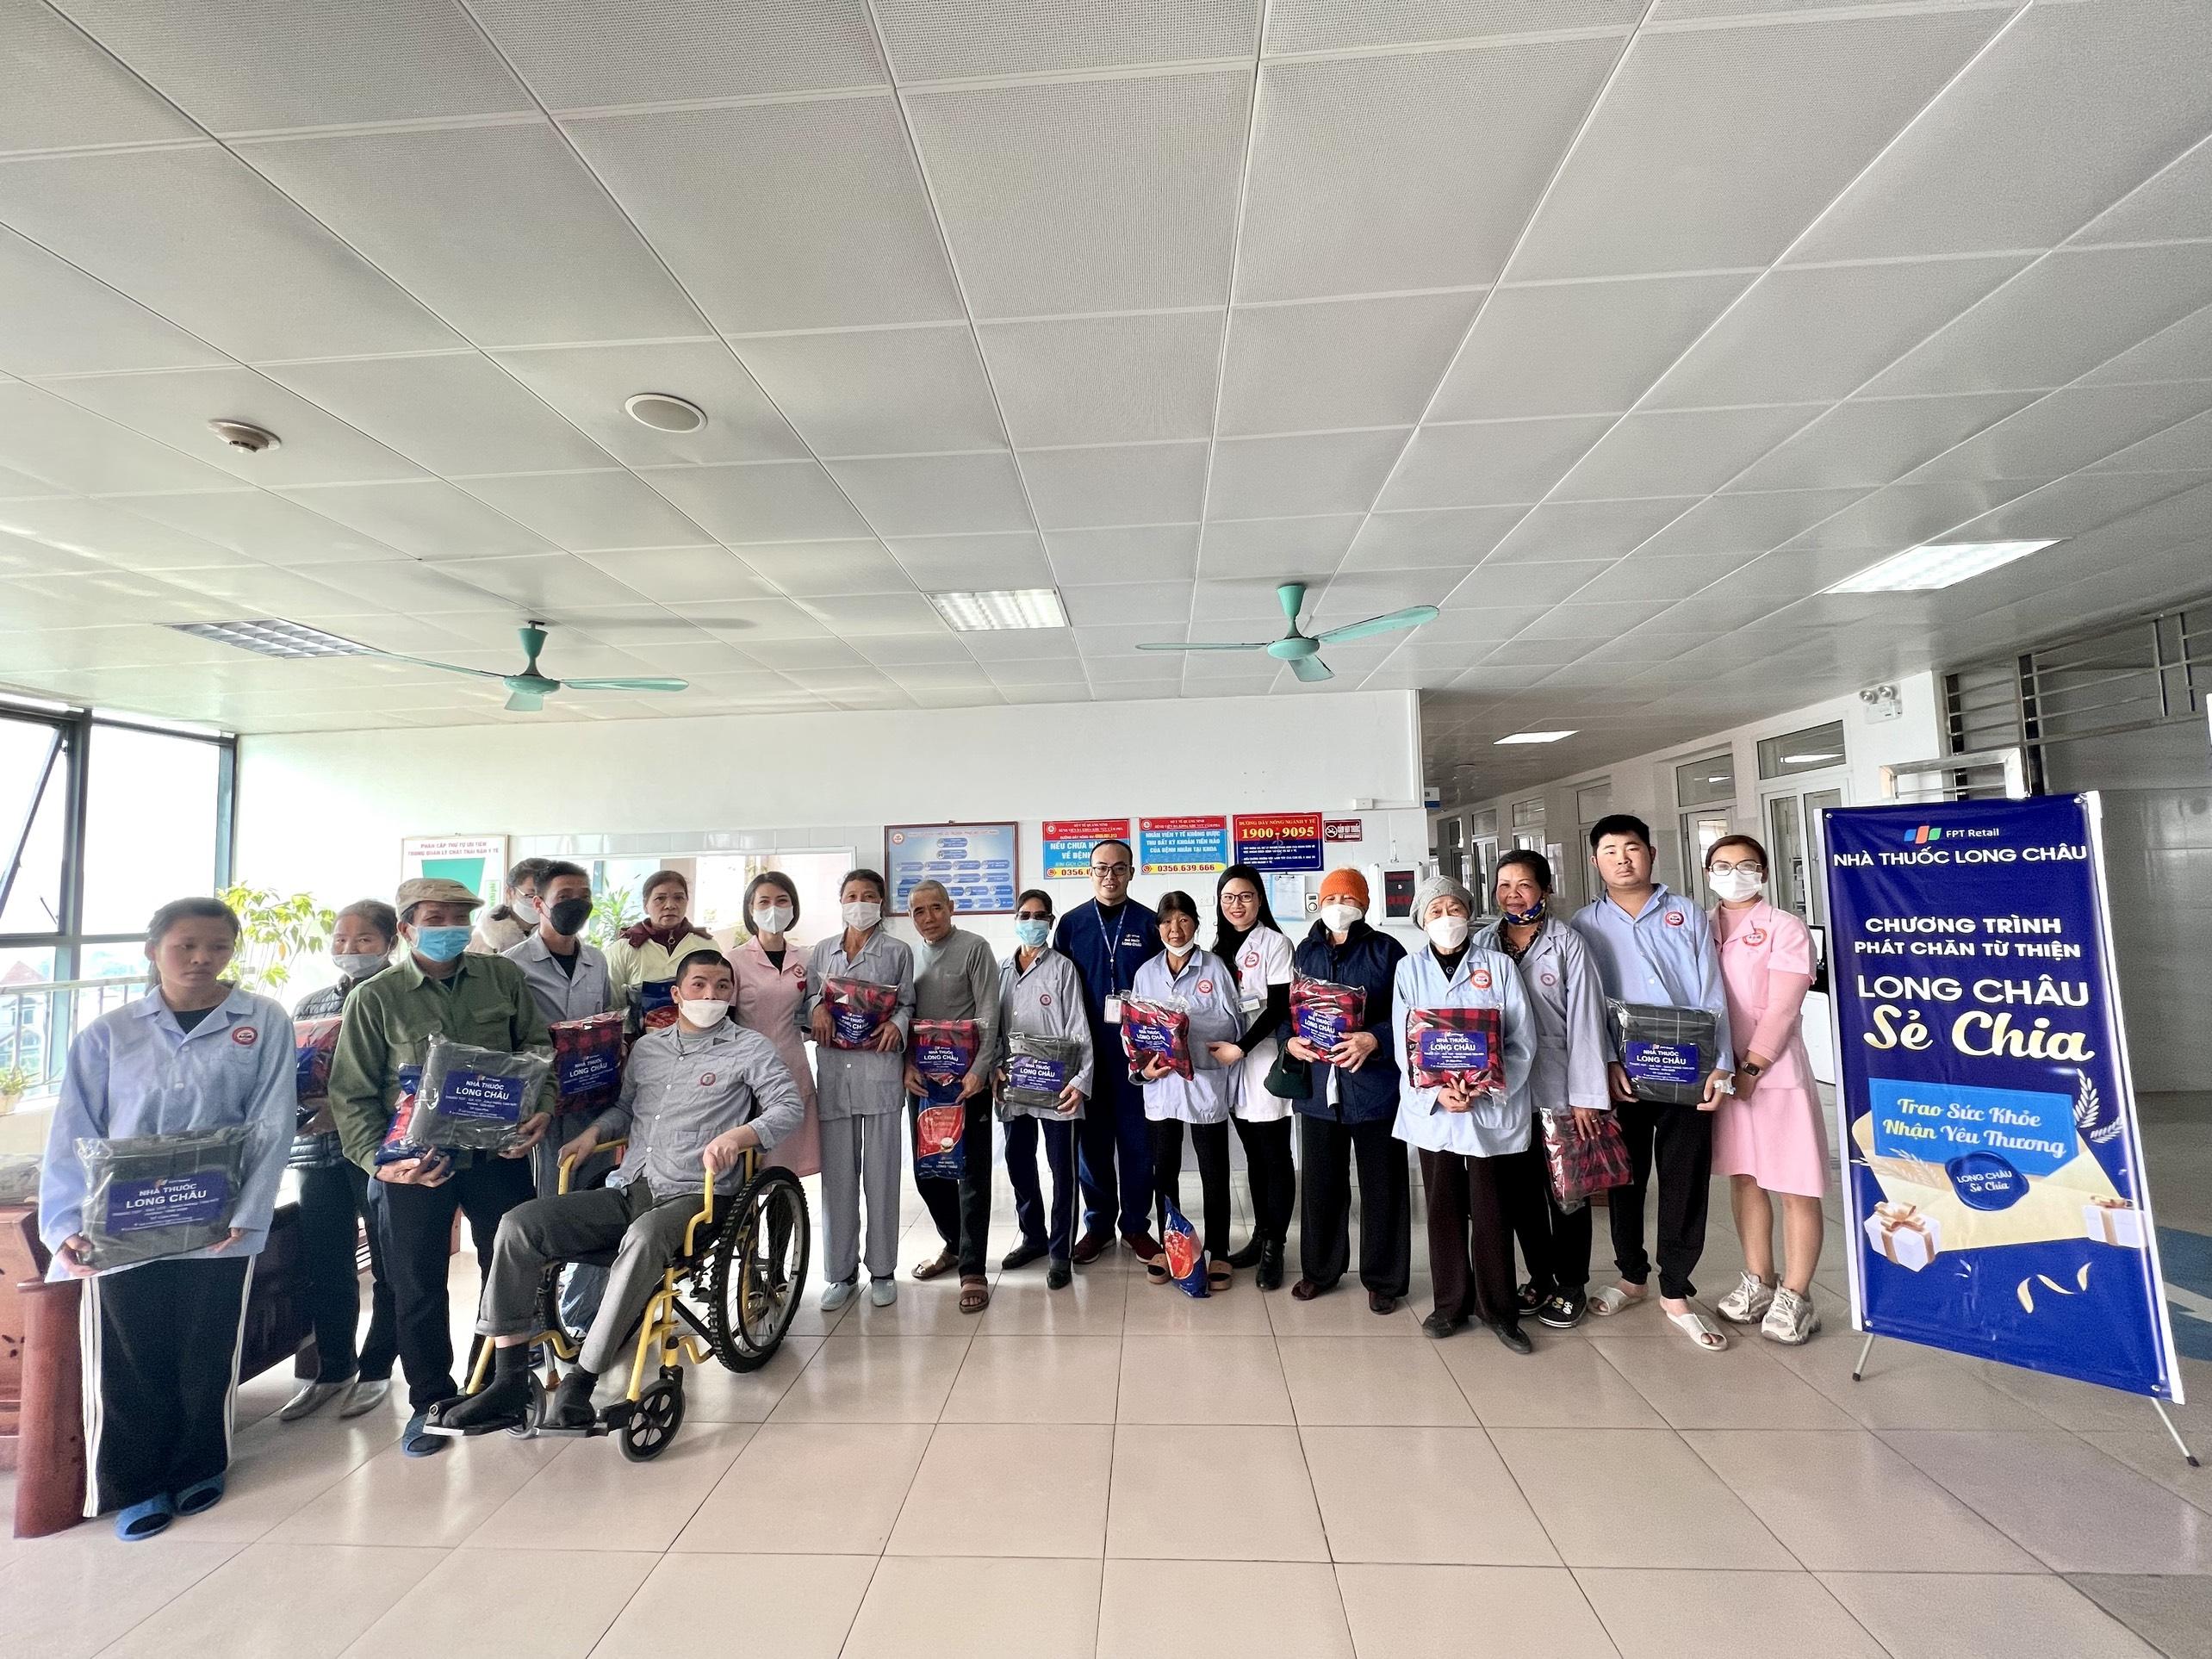 Bệnh viện ĐKKV Cẩm Phả và Nhà thuốc Long Châu tổ chức tặng 20 chiếc chăn ấm và 07 gói gạo ngon cho người bệnh đang điều trị nội trú tại bệnh viện.